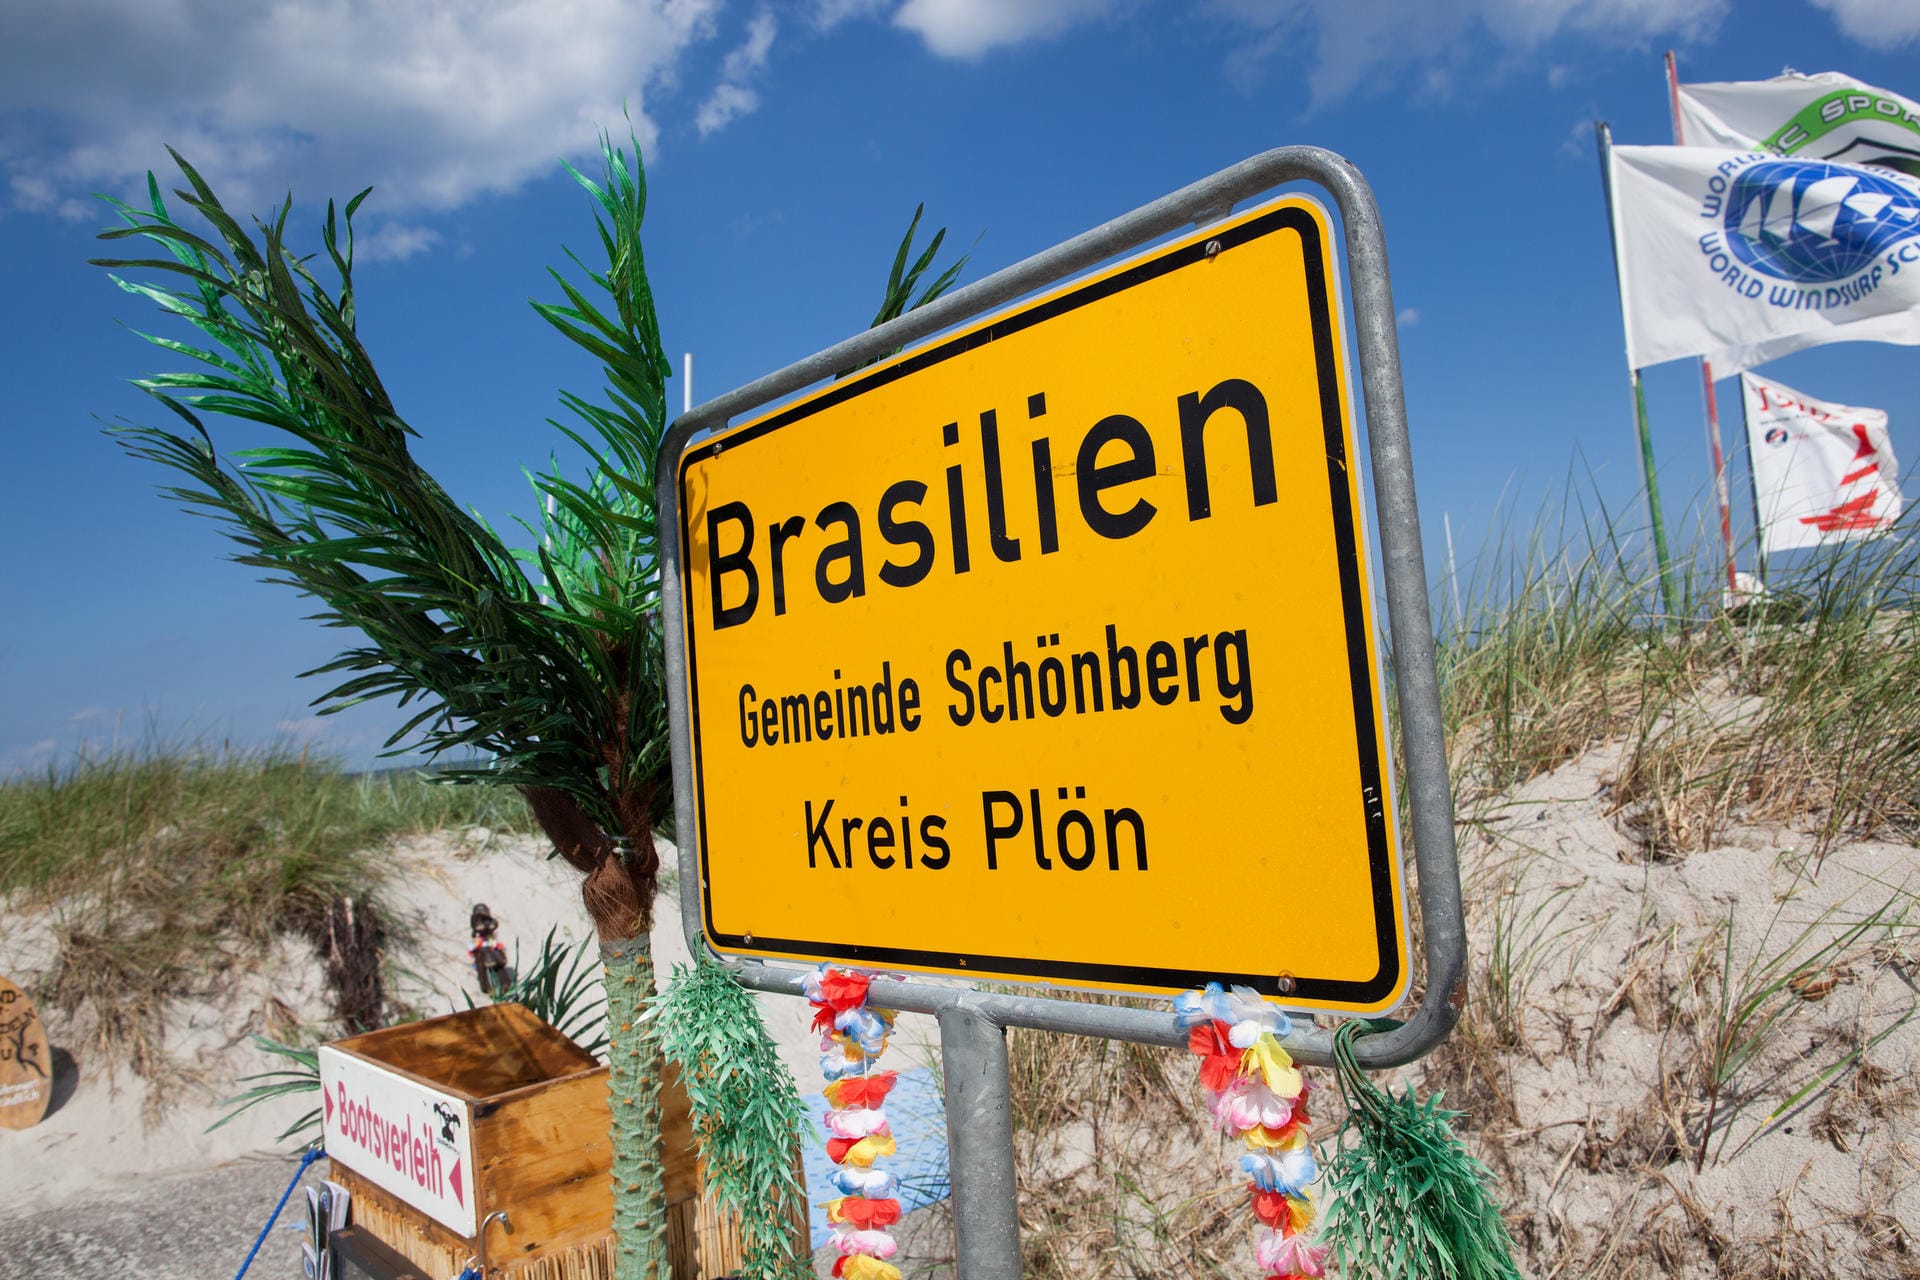 Ungewohntes Ortsschild: Der Strandabschnitt Brasilien gehört zur Gemeinde Schönberg und liegt an der Ostsee zwischen den Schönberger Ortsteilen Kalifornien und Schönberger Strand.